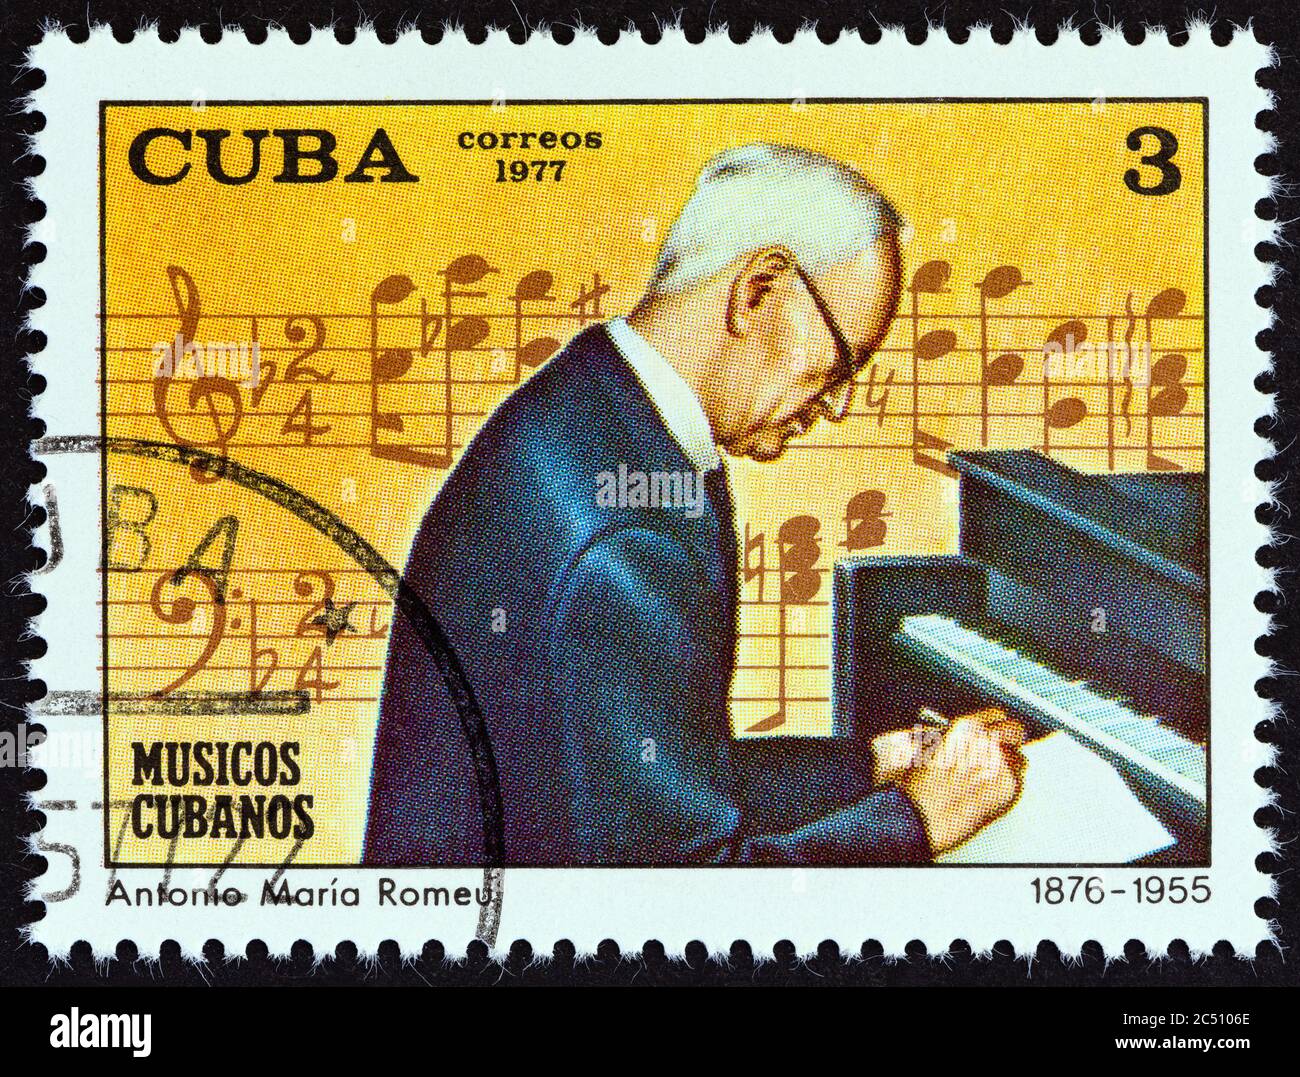 CUBA - VERS 1977: Un timbre imprimé à Cuba de l'édition "musiciens cubains" montre Antonio Maria Romeu, vers 1977. Banque D'Images